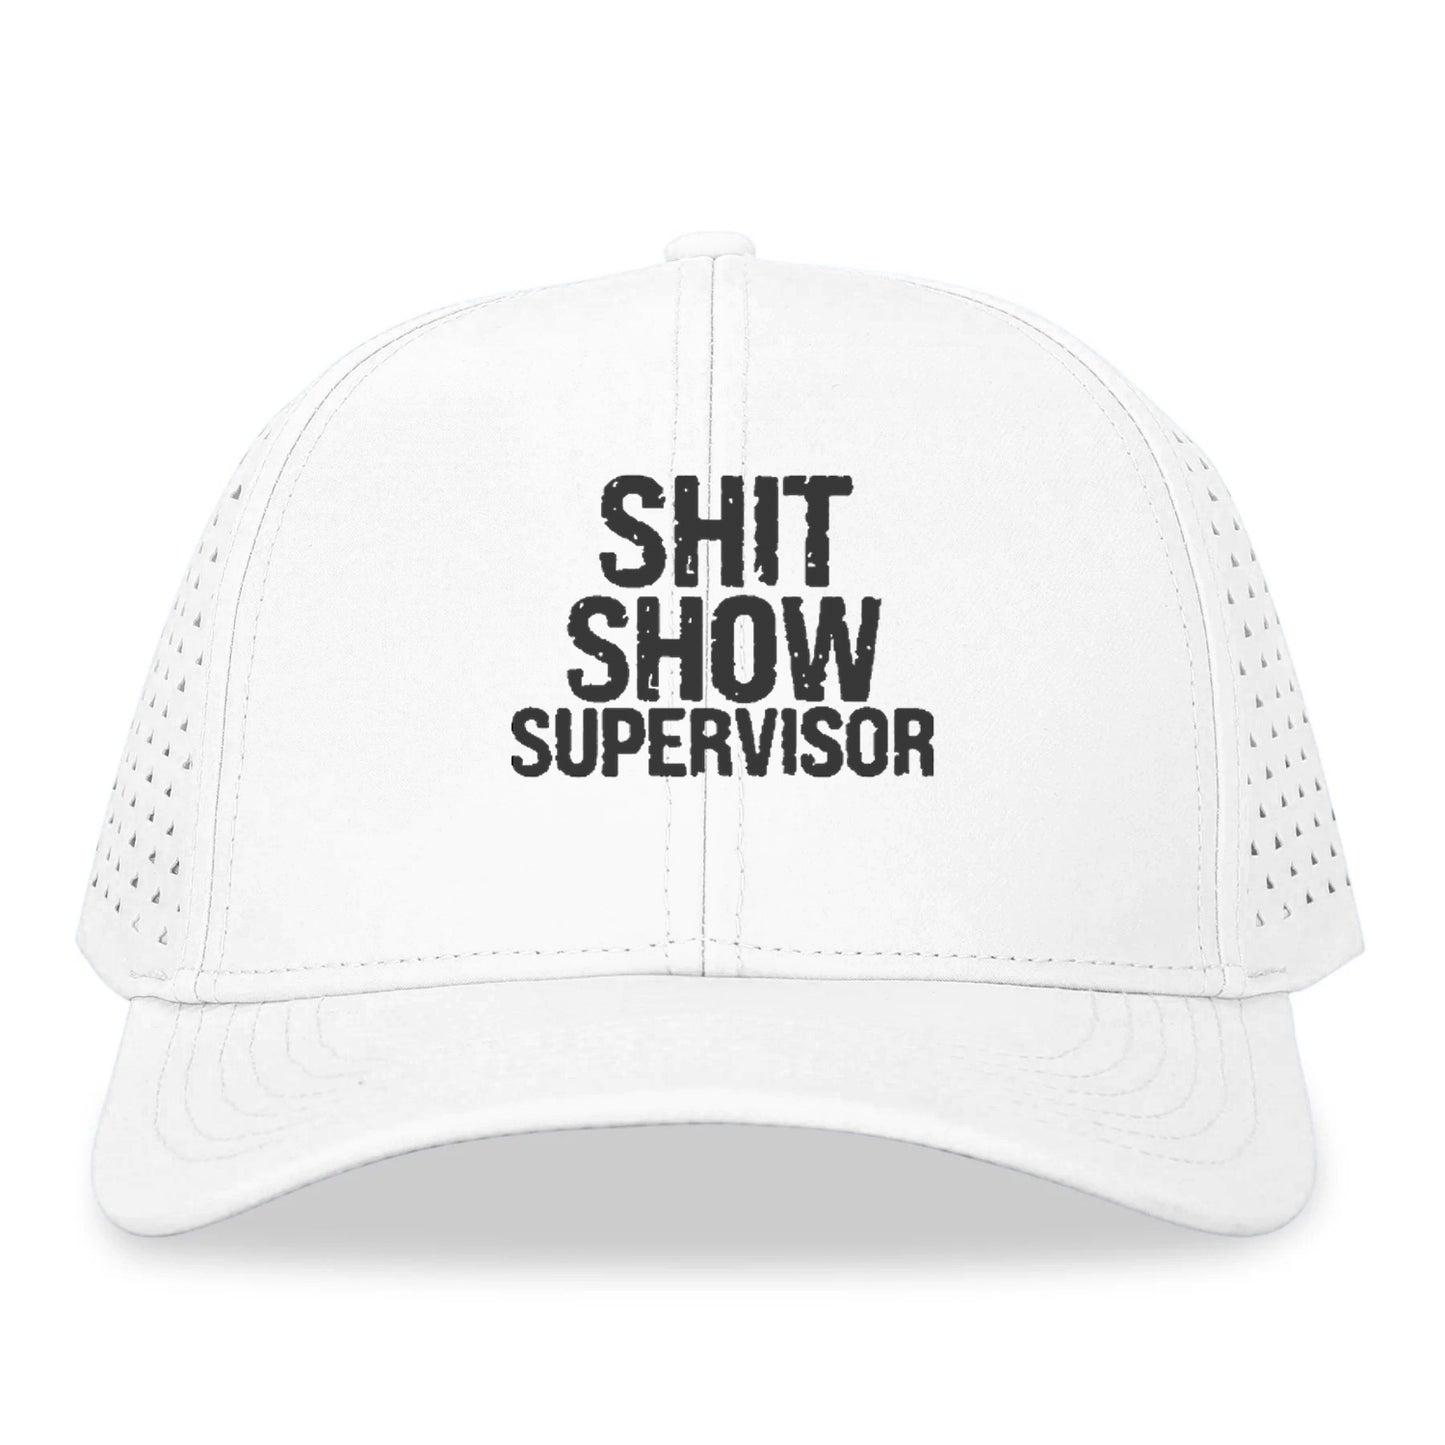 shit show supervisor Hat